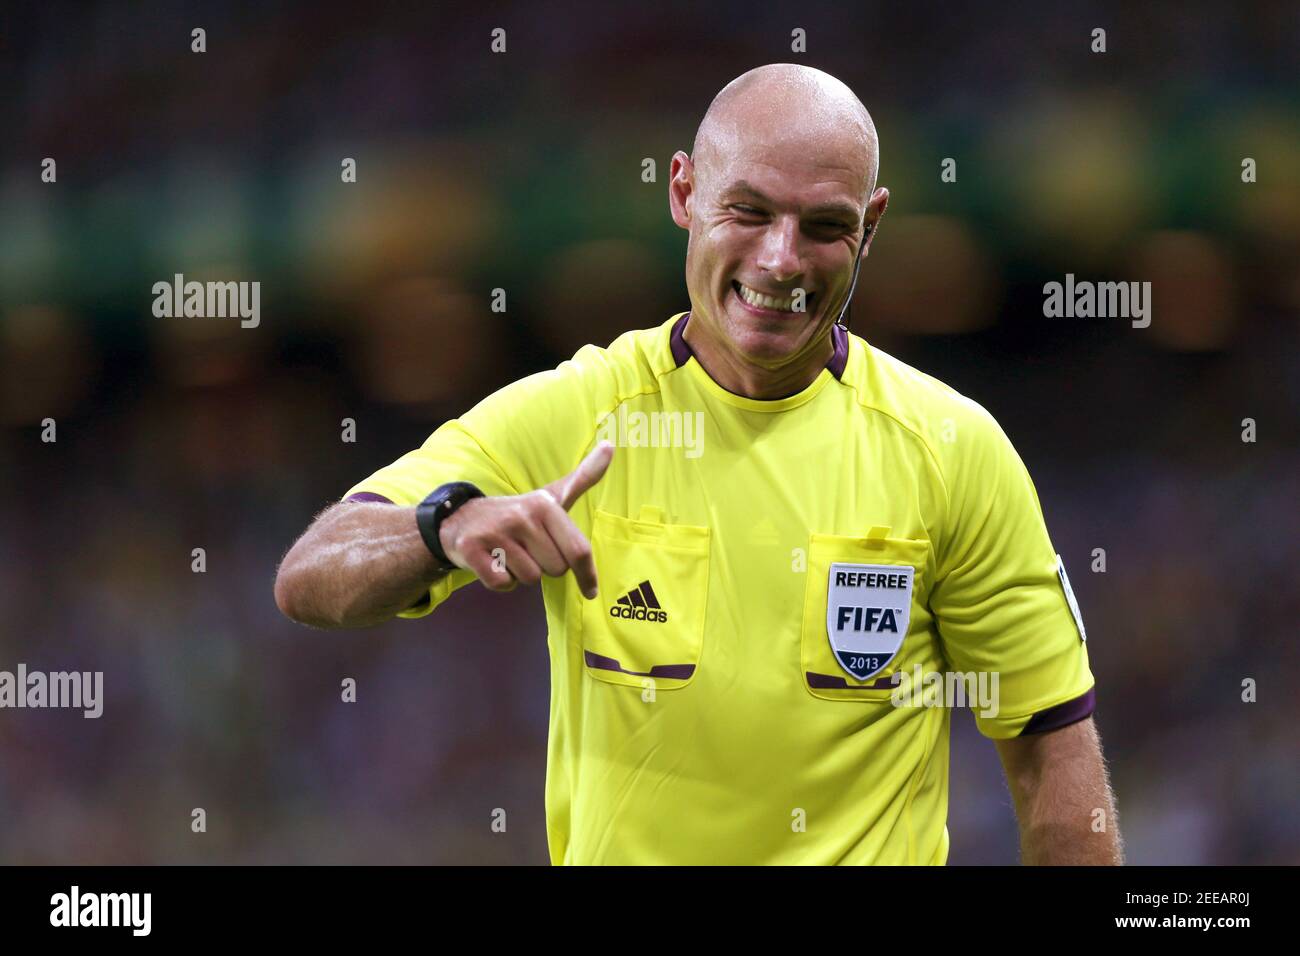 Referee Brazil Fotos e Imágenes de stock - Página 7 - Alamy